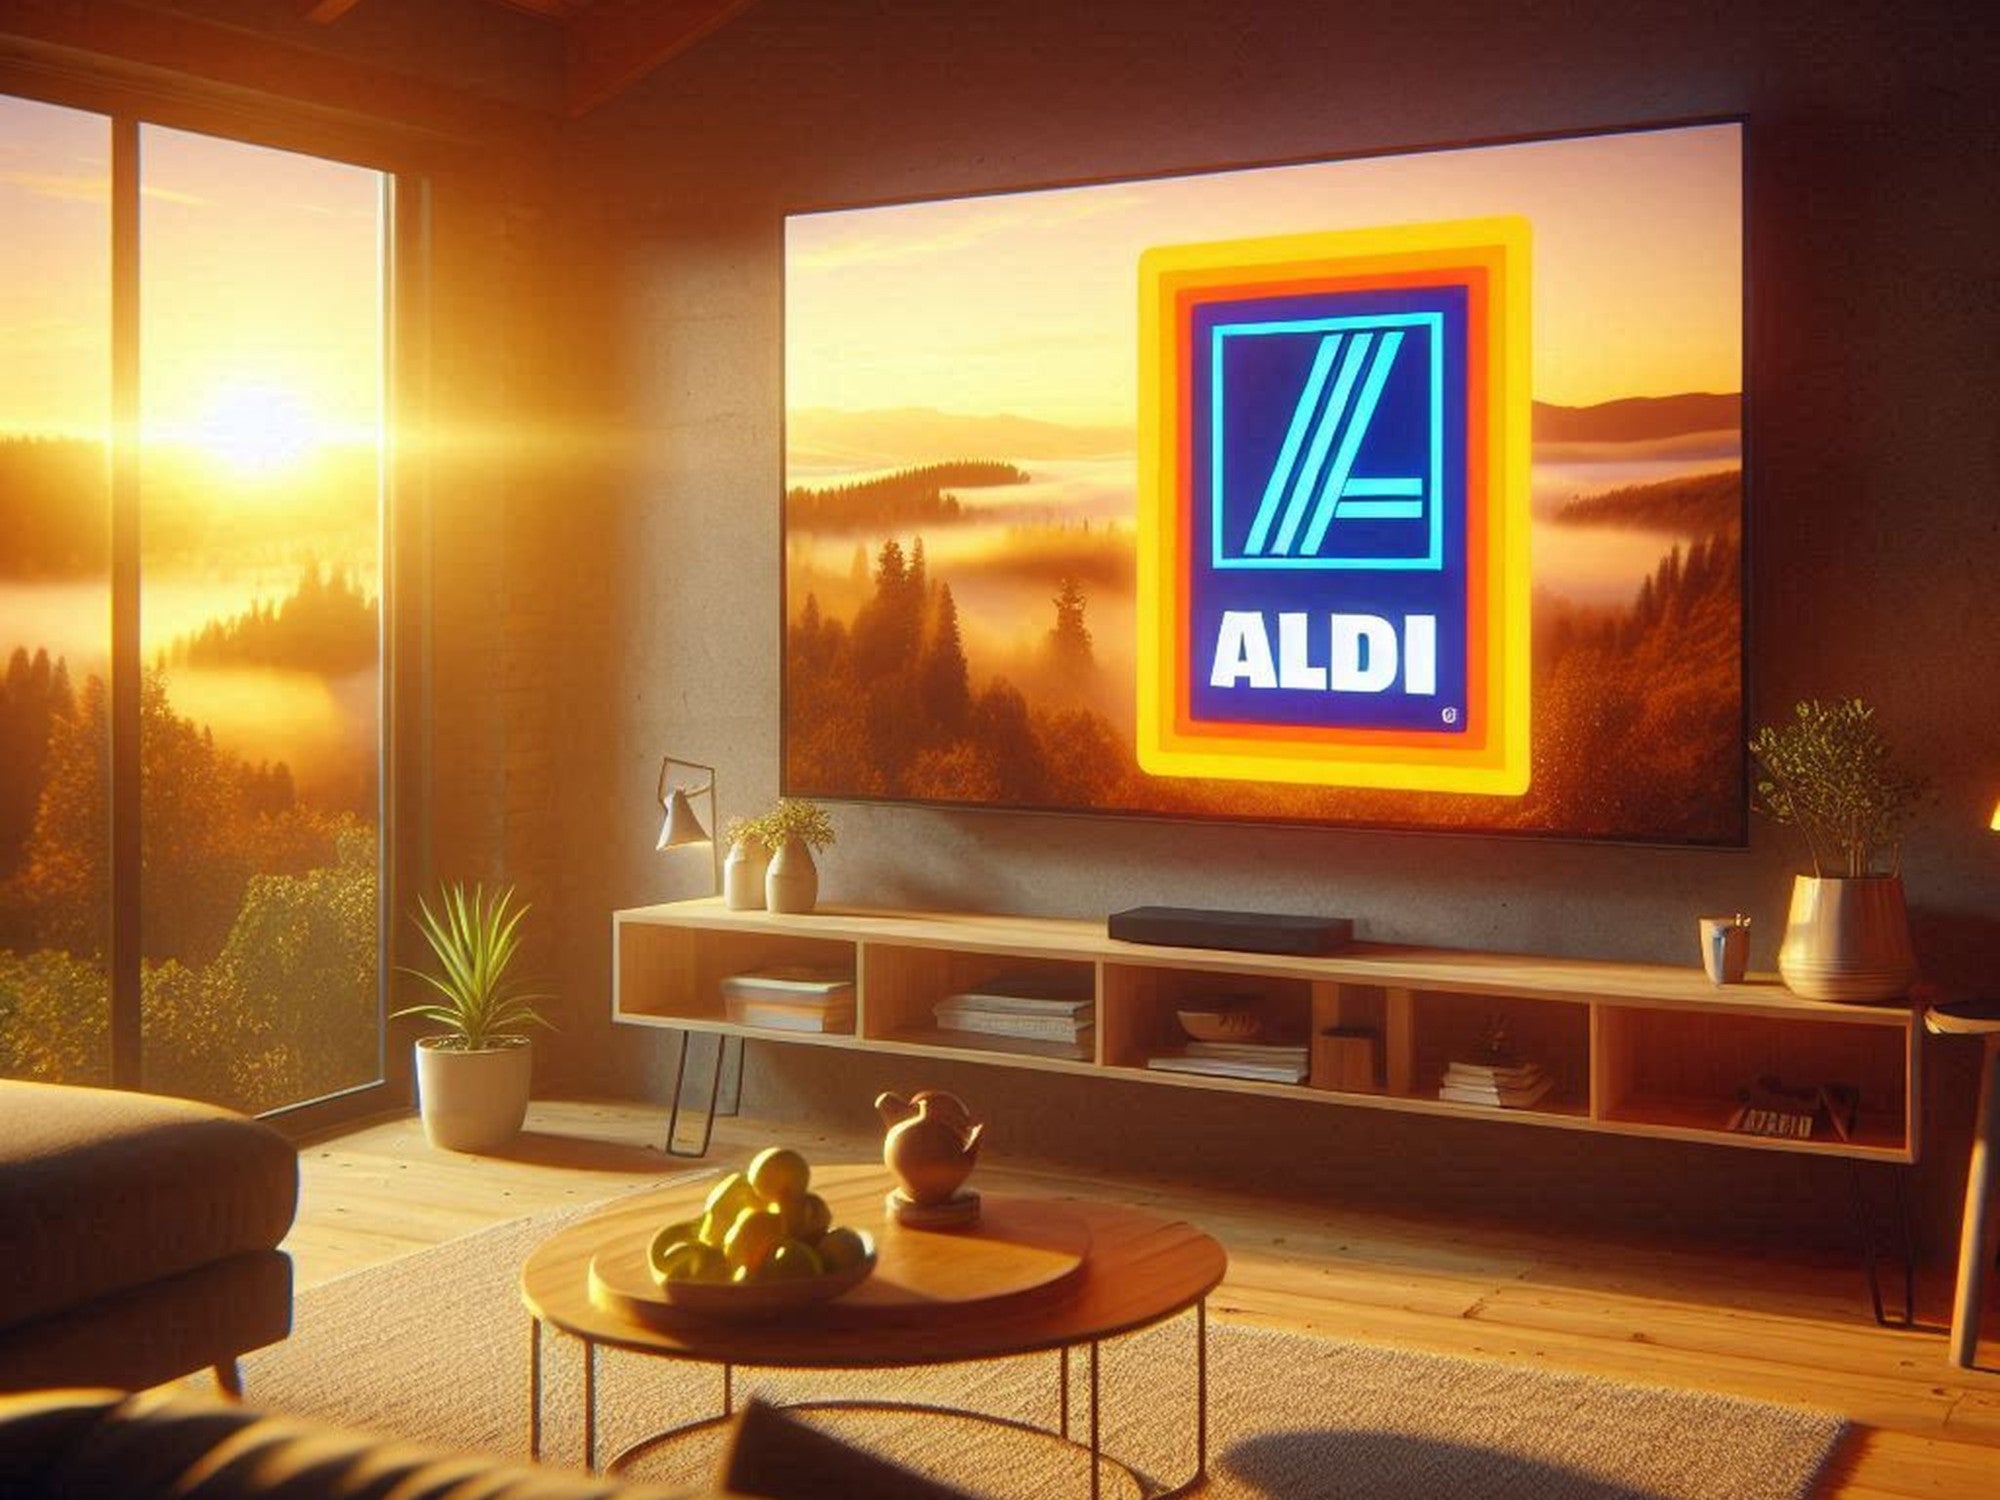 Fernseher mit dem Logo von Aldi auf dem Bildschirm in eine Wohnzimmer.